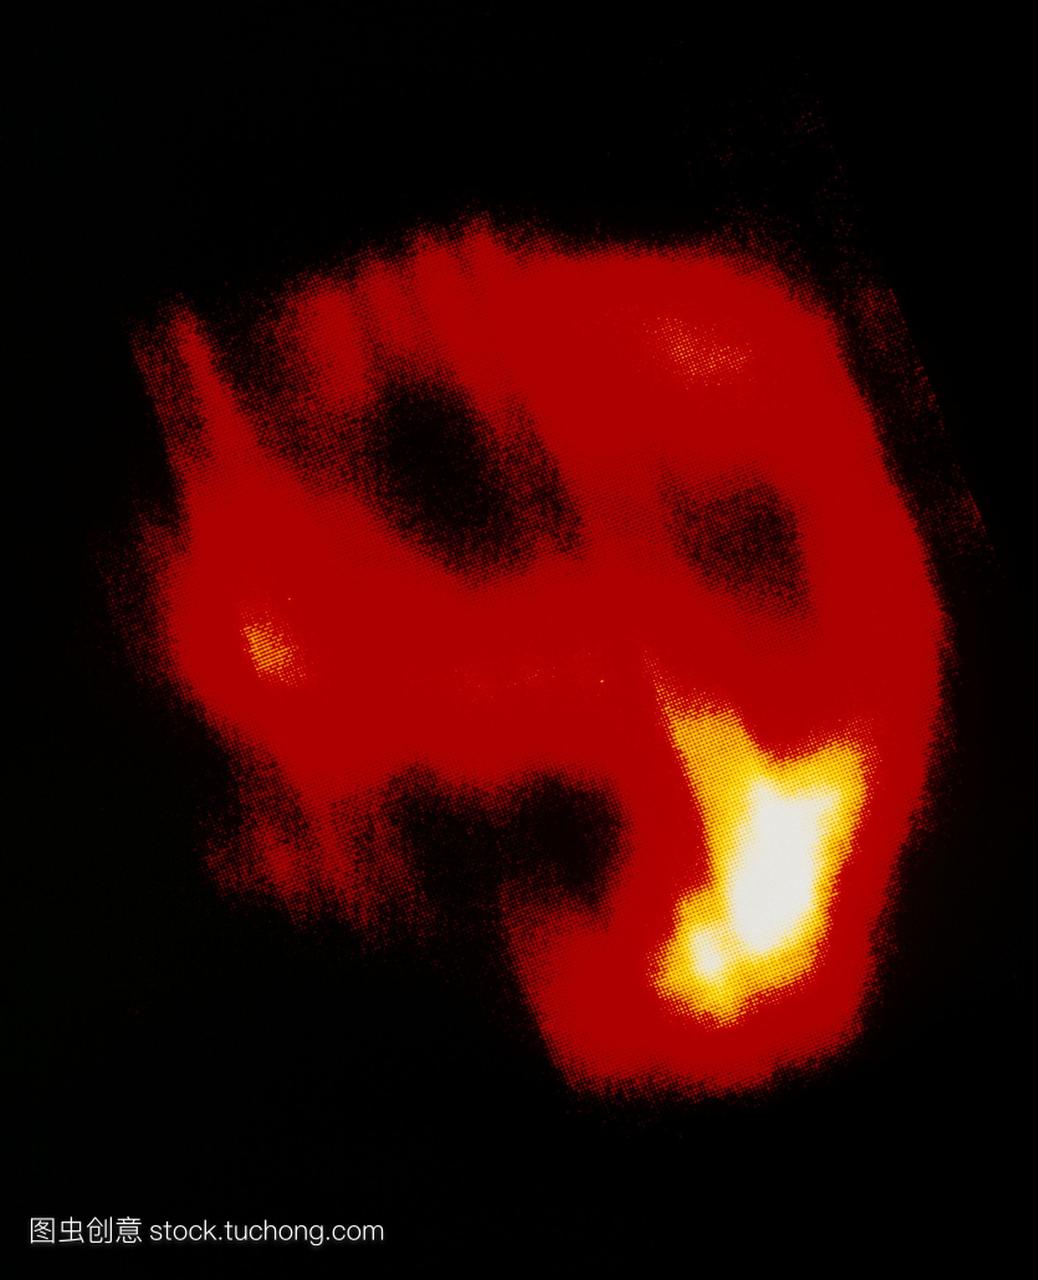 超新星遗迹msh11-54在红外空间天文台iso卫星